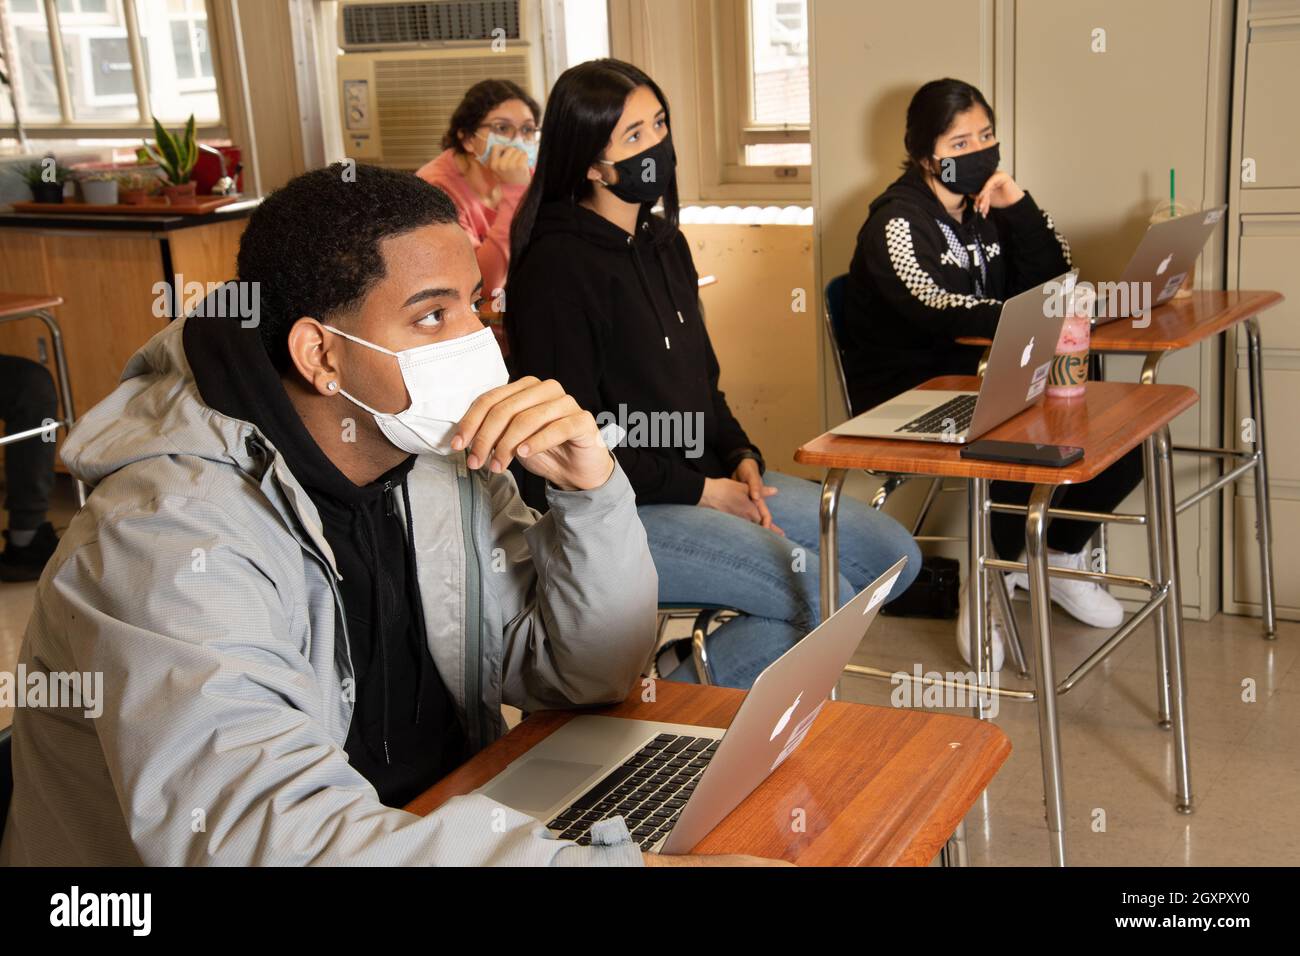 Éducation scène de classe de lycée, les élèves écoutent, tous portant des masques pour protéger contre l'infection Covid-19 Banque D'Images